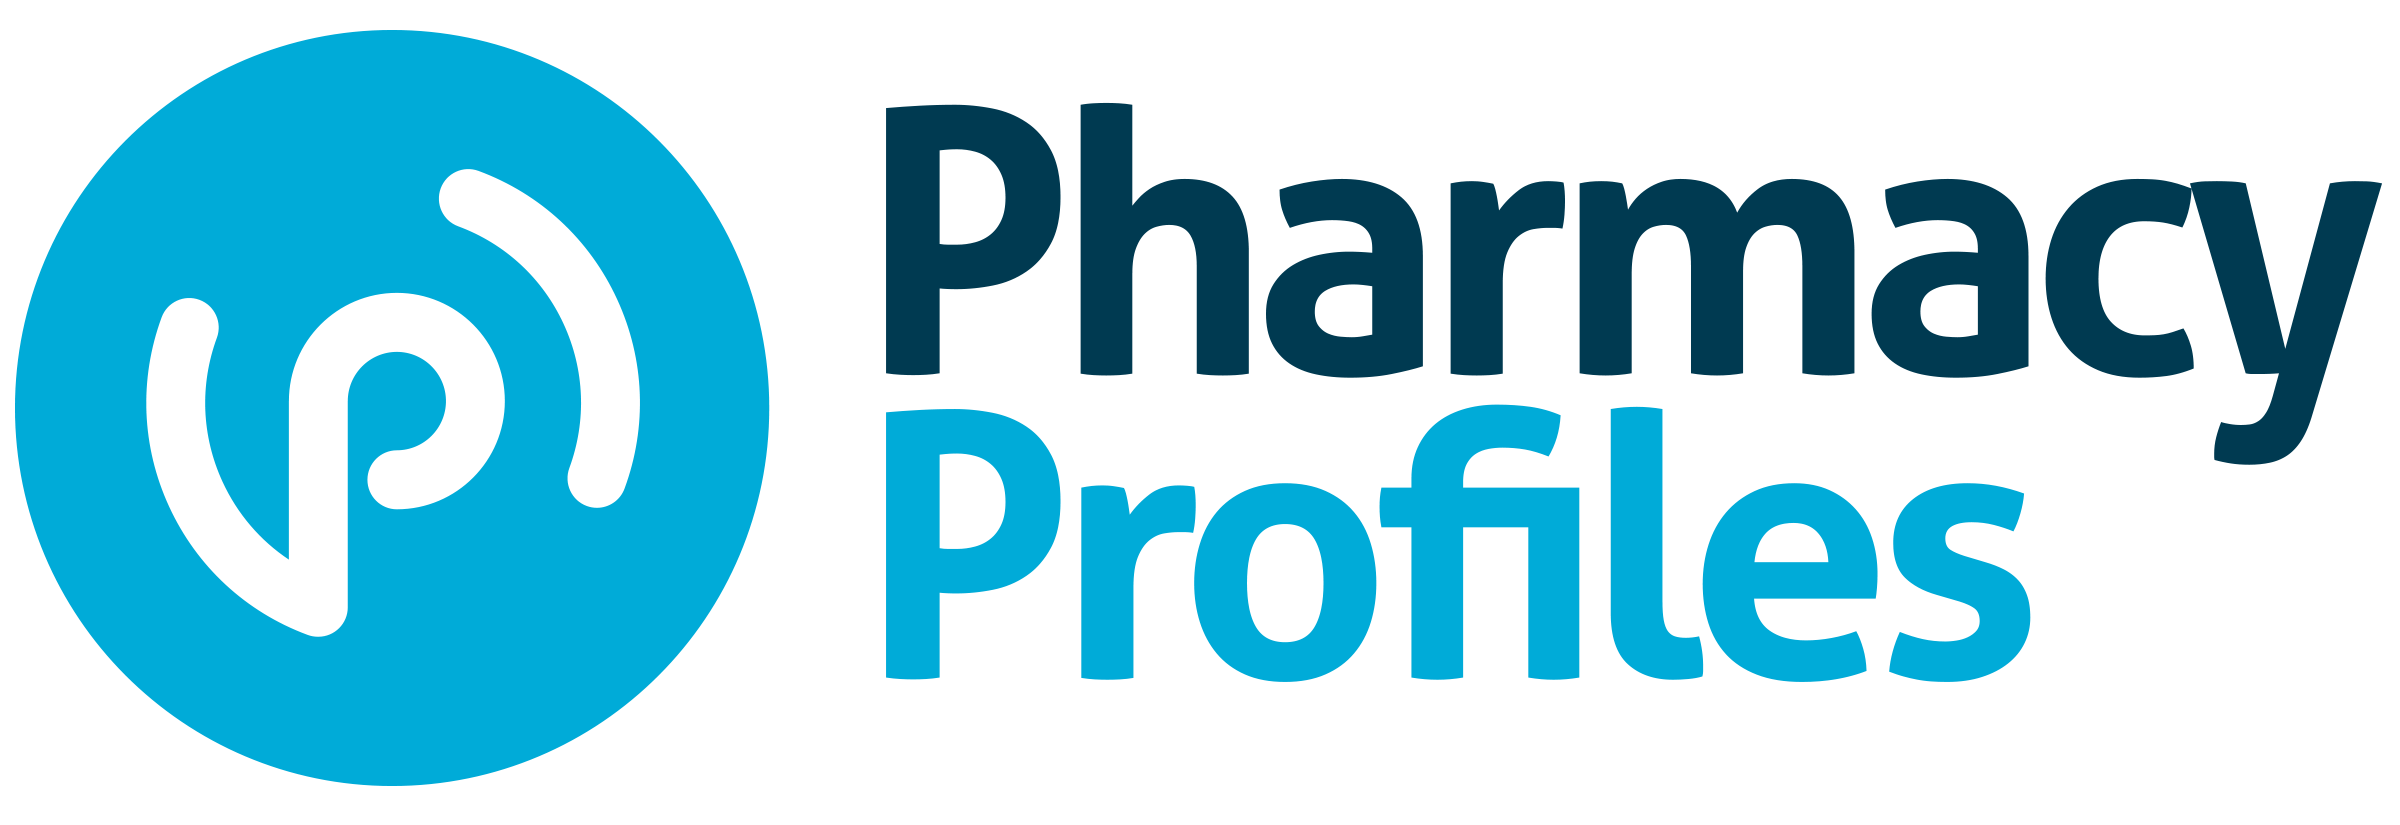 Pharmacy Profiles